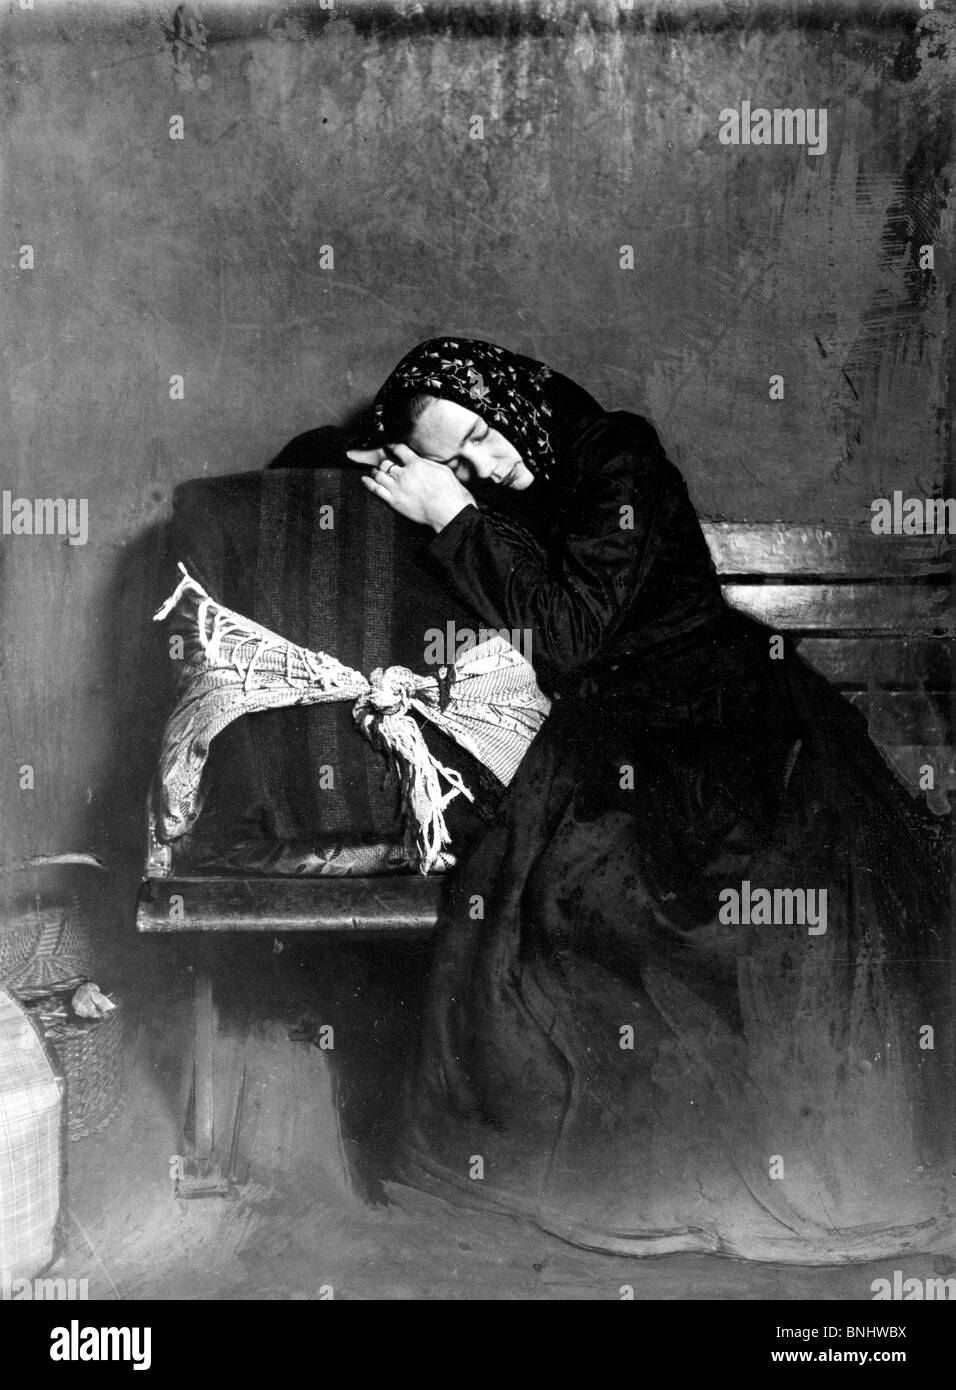 USA female emigrant Ellis Island New York 1905 femme fille fatigué des bagages de couchage assurance l'émigration histoire de migration est arrivé Banque D'Images